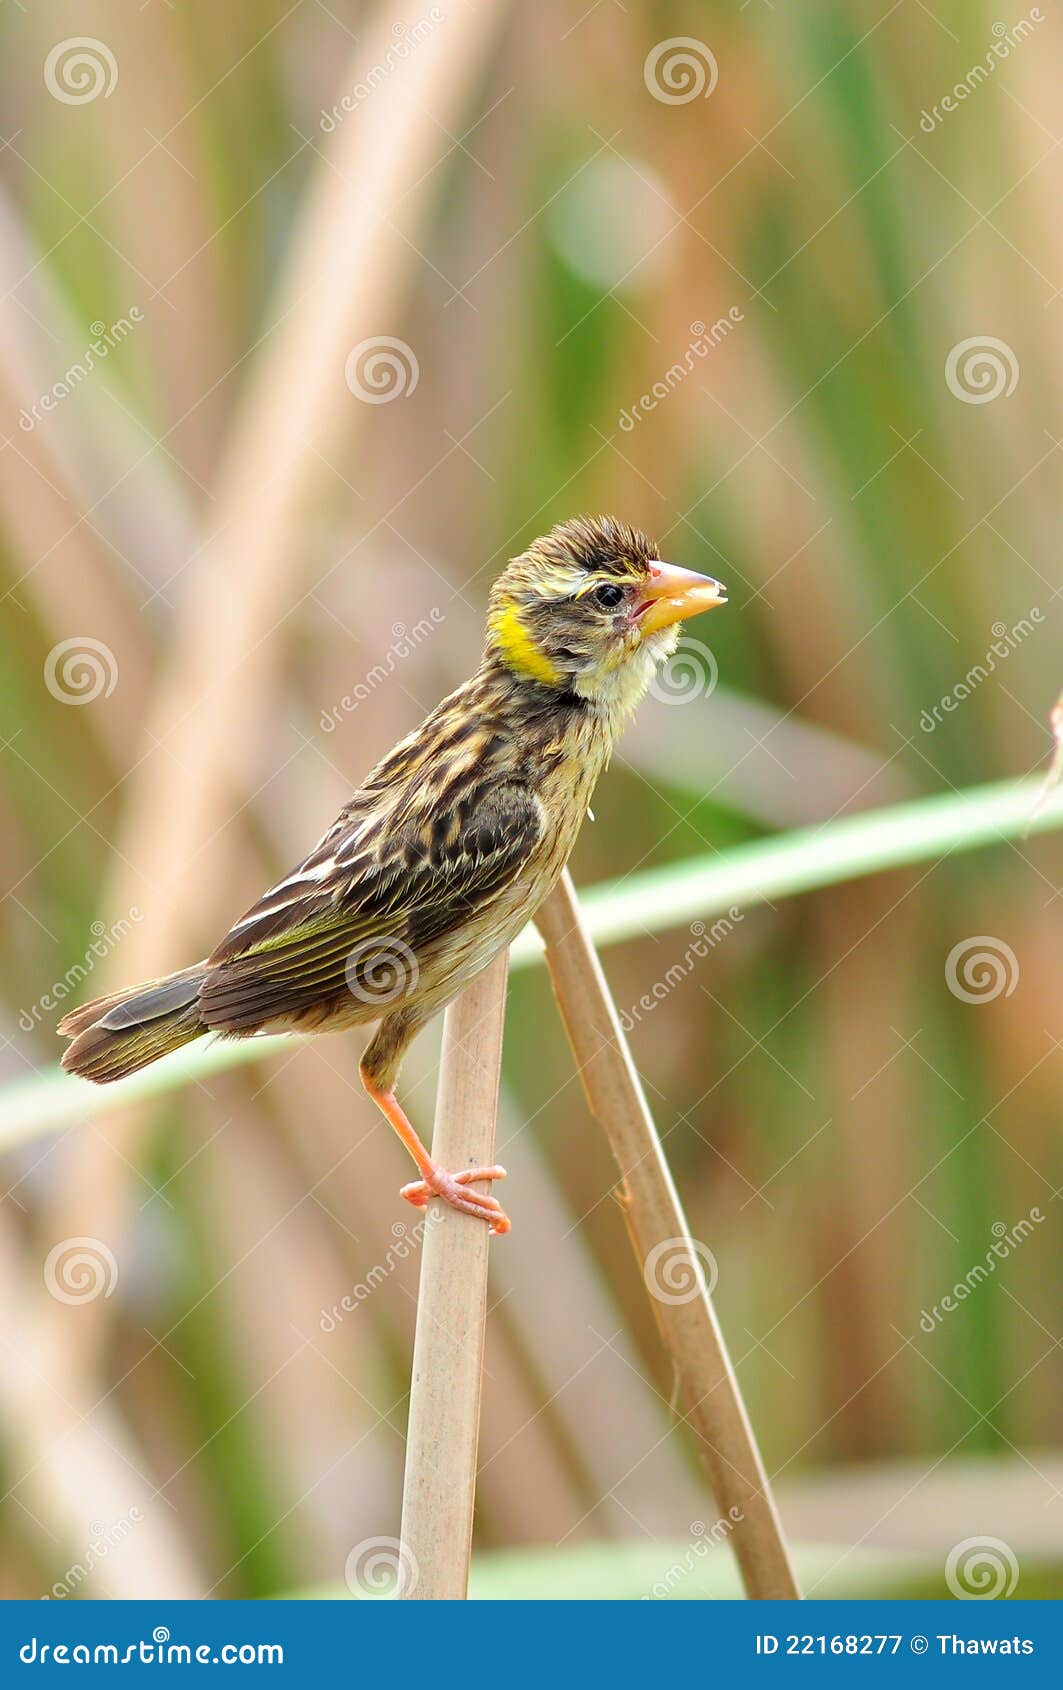 female streaked weaver bird